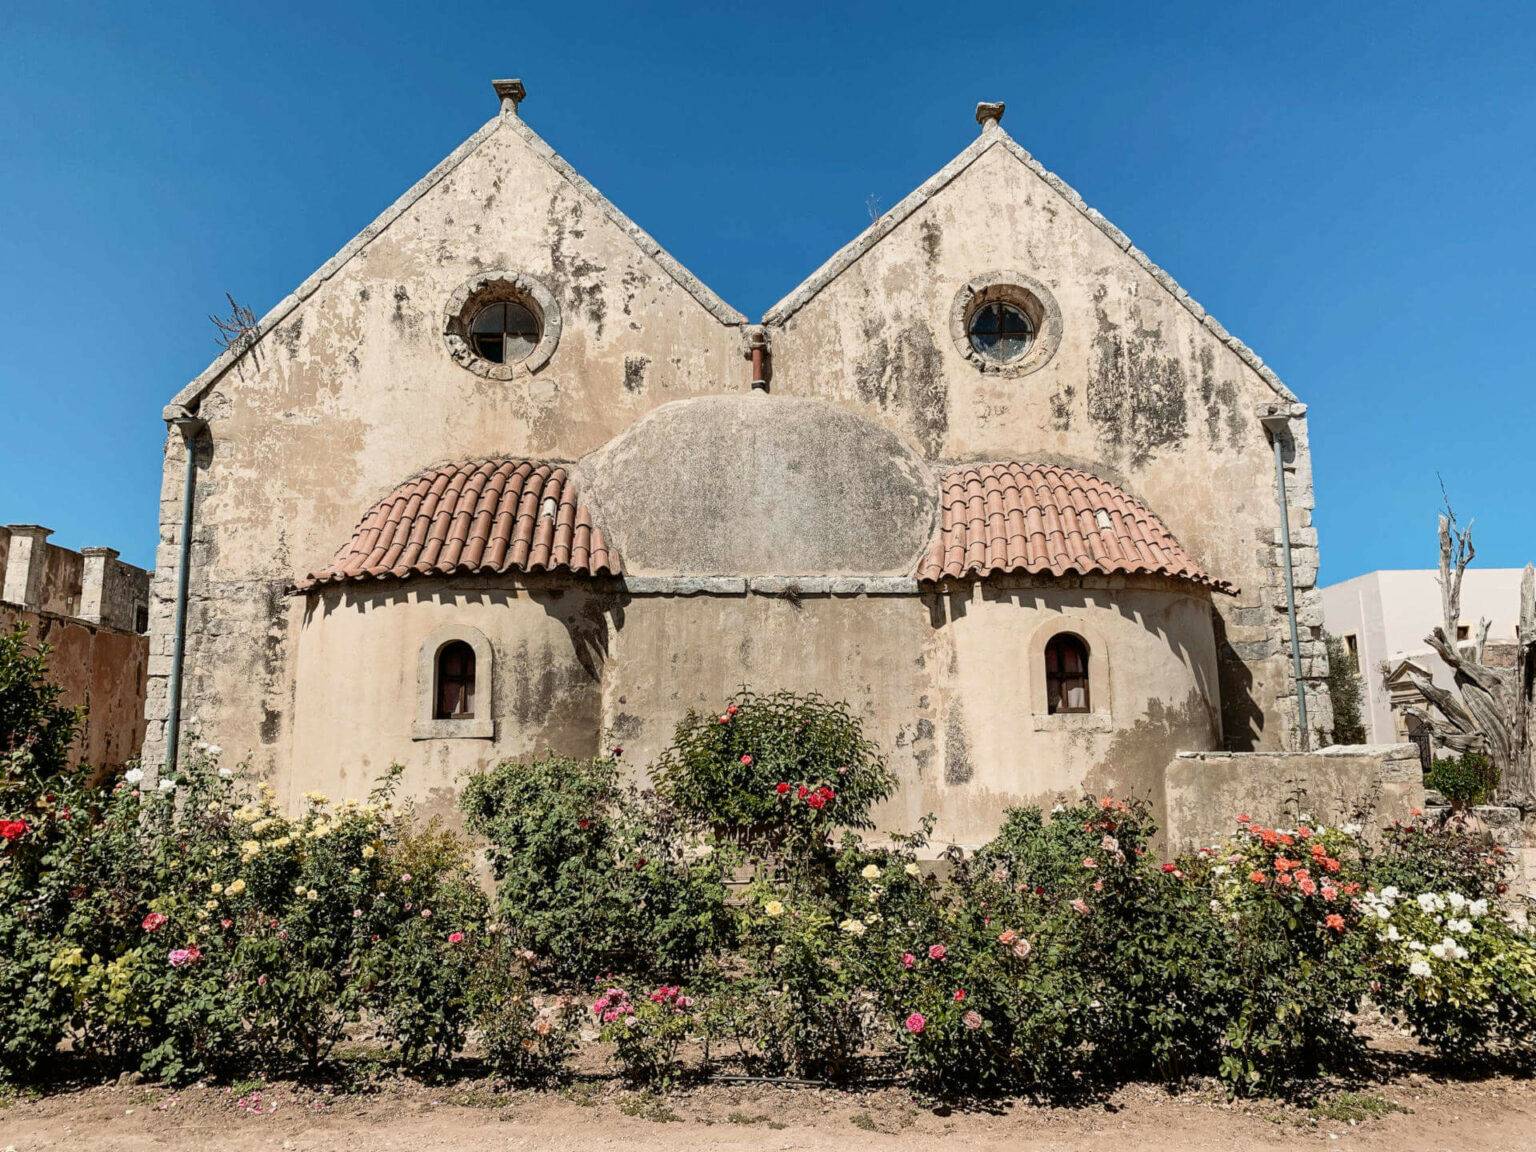 Sehr sehenswert: Das alte Kloster Arkadi auf Kreta, das im Sommer seine Besucher mit einer Blütenpracht überrascht, hat eine spannende Geschichte.